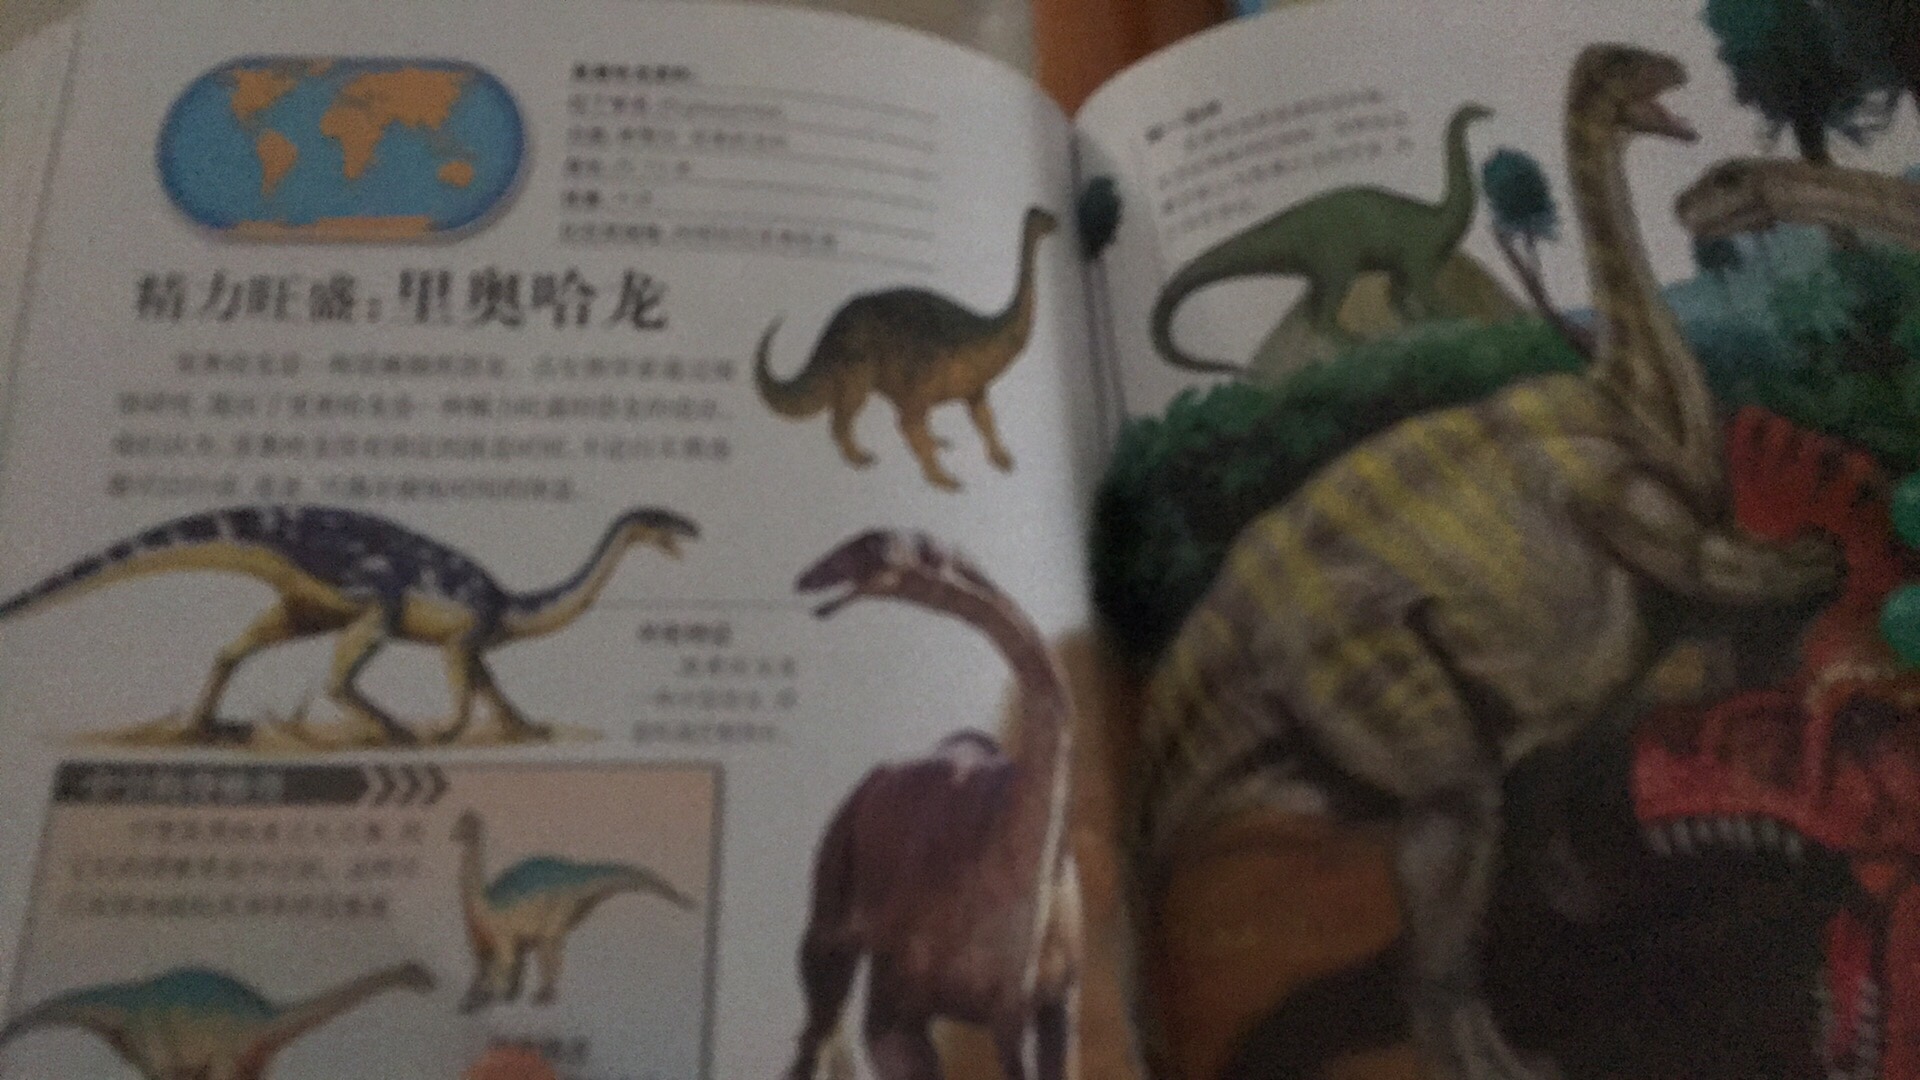 好多不认识也没有听说过的恐龙，很偏冷。